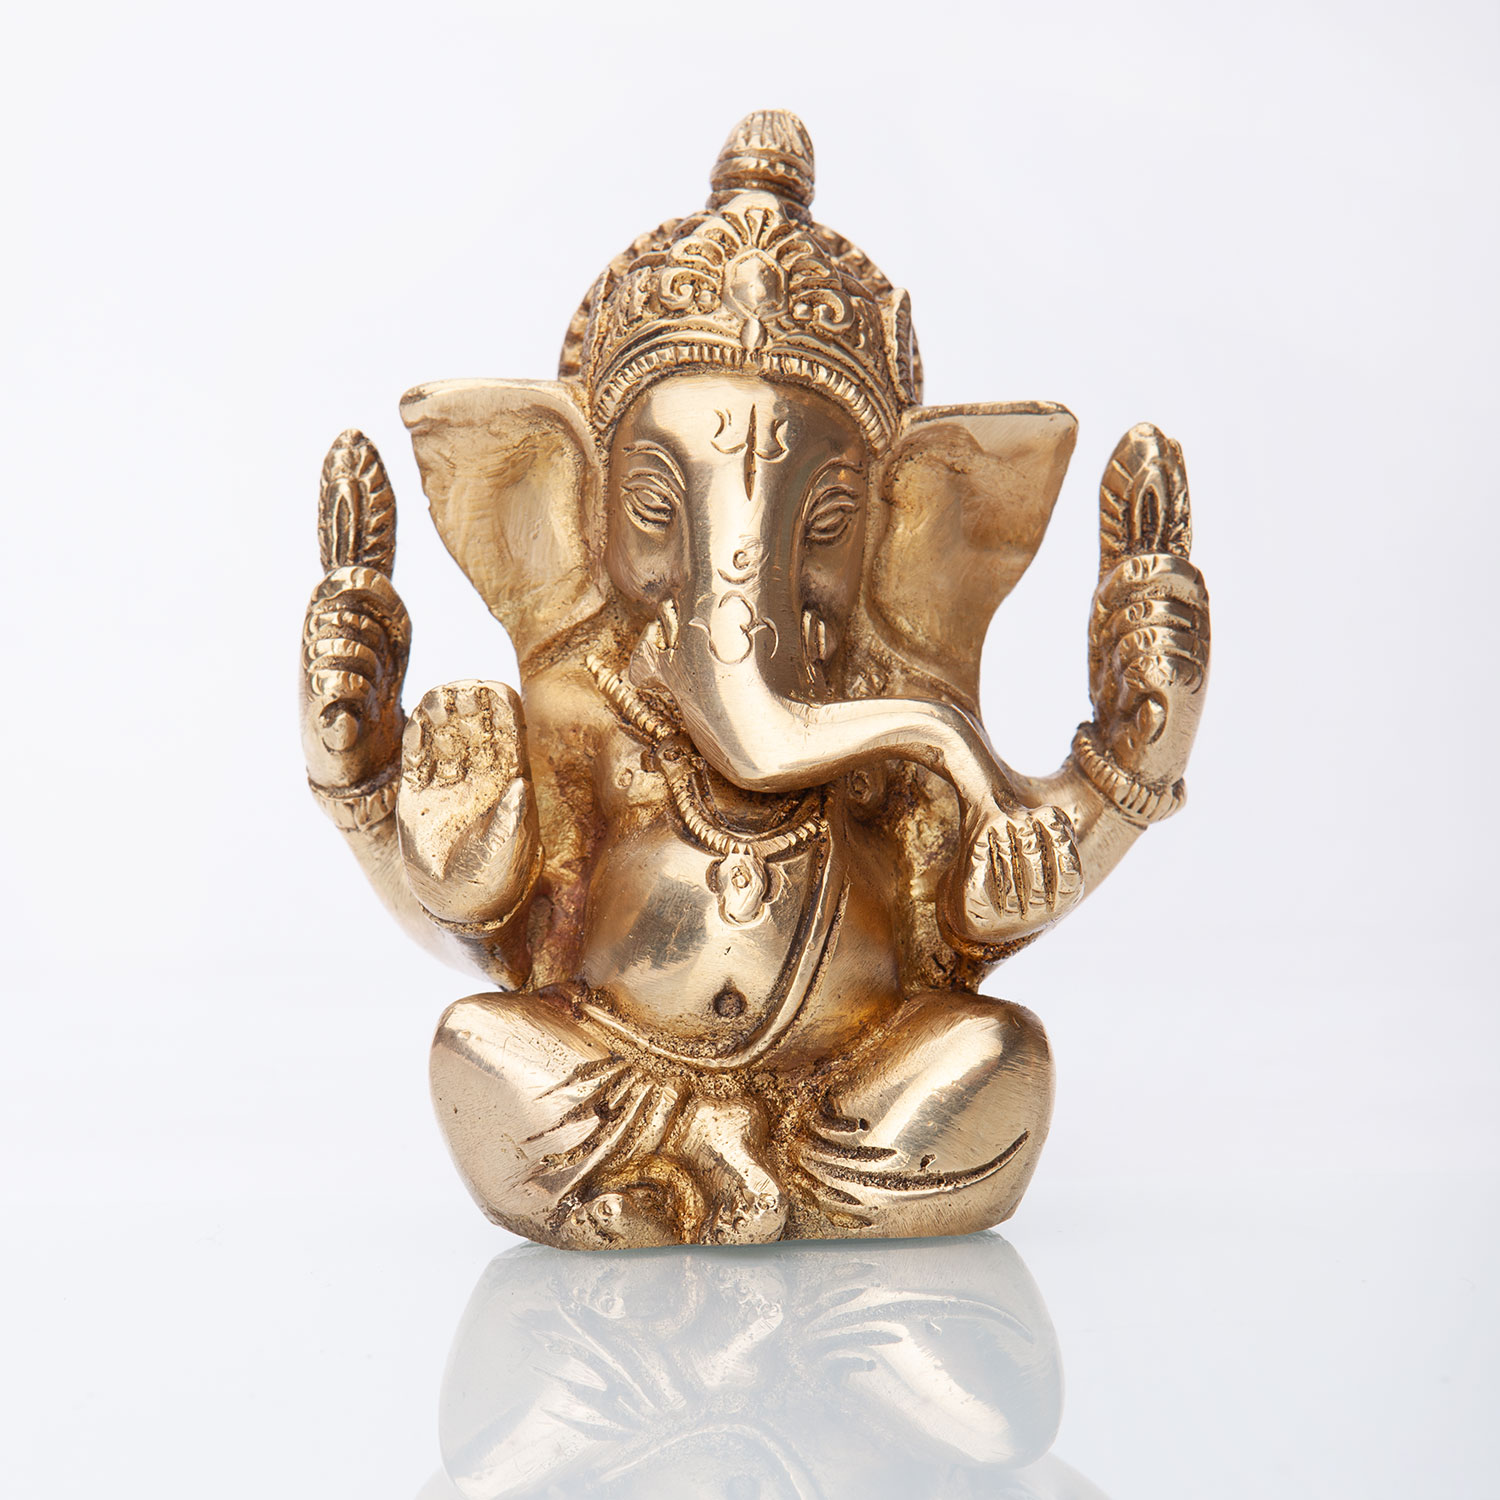 Feiner sitzender Ganesha Elefantengott aus Indien 0,8 kg 12cm hoch Messing 